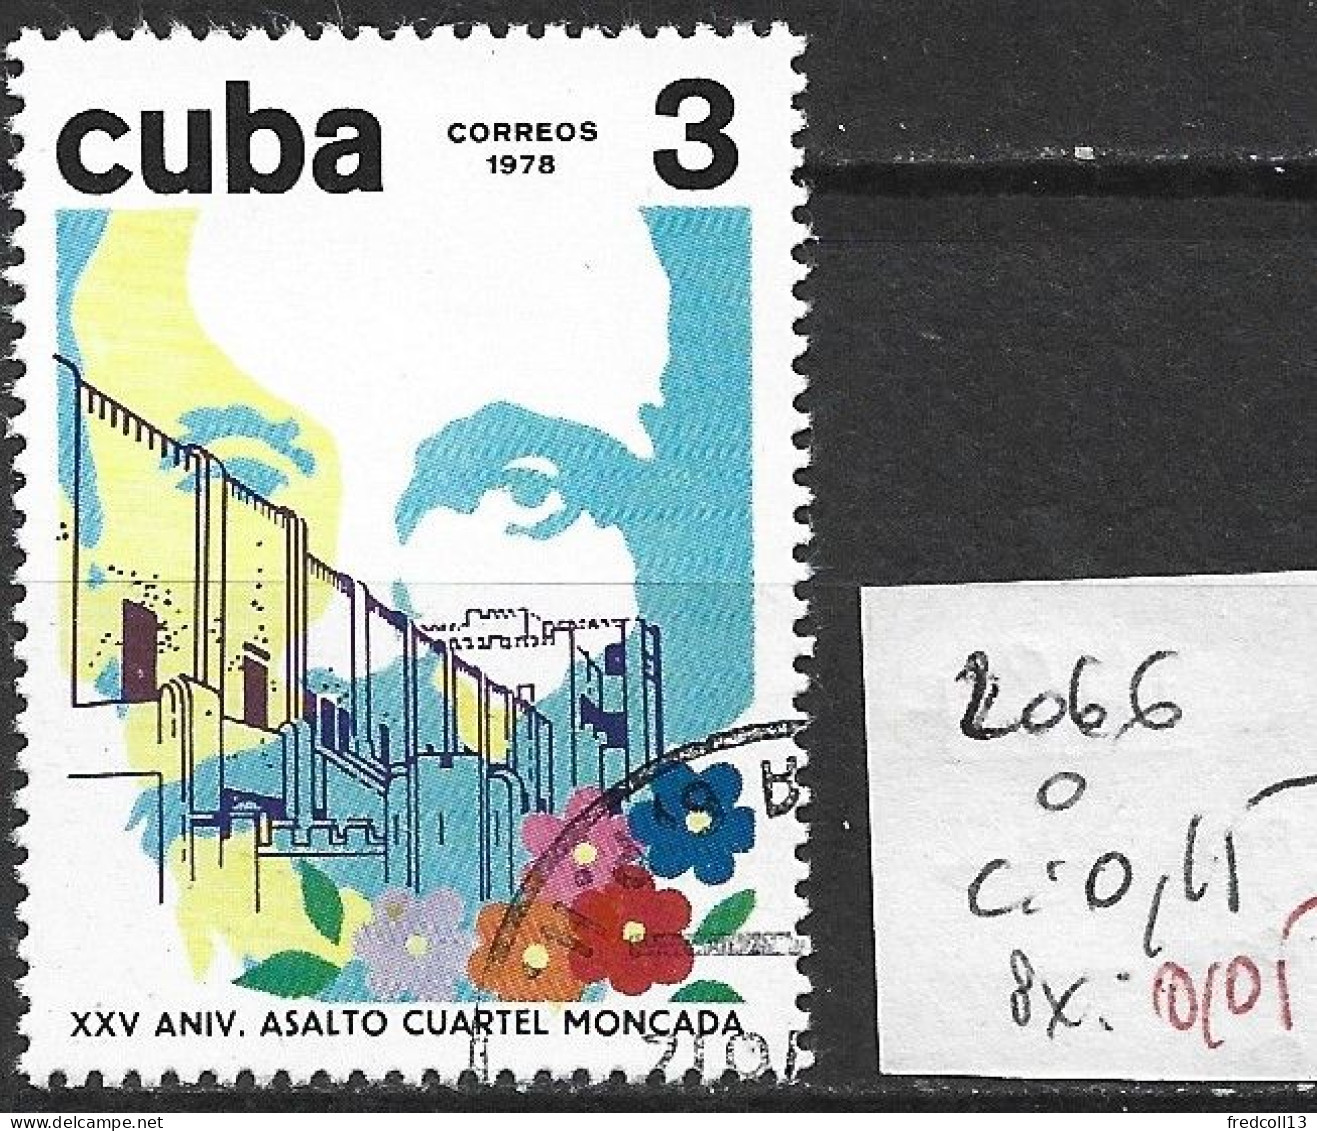 CUBA 2066 Oblitéré Côte 0.15 € - Used Stamps